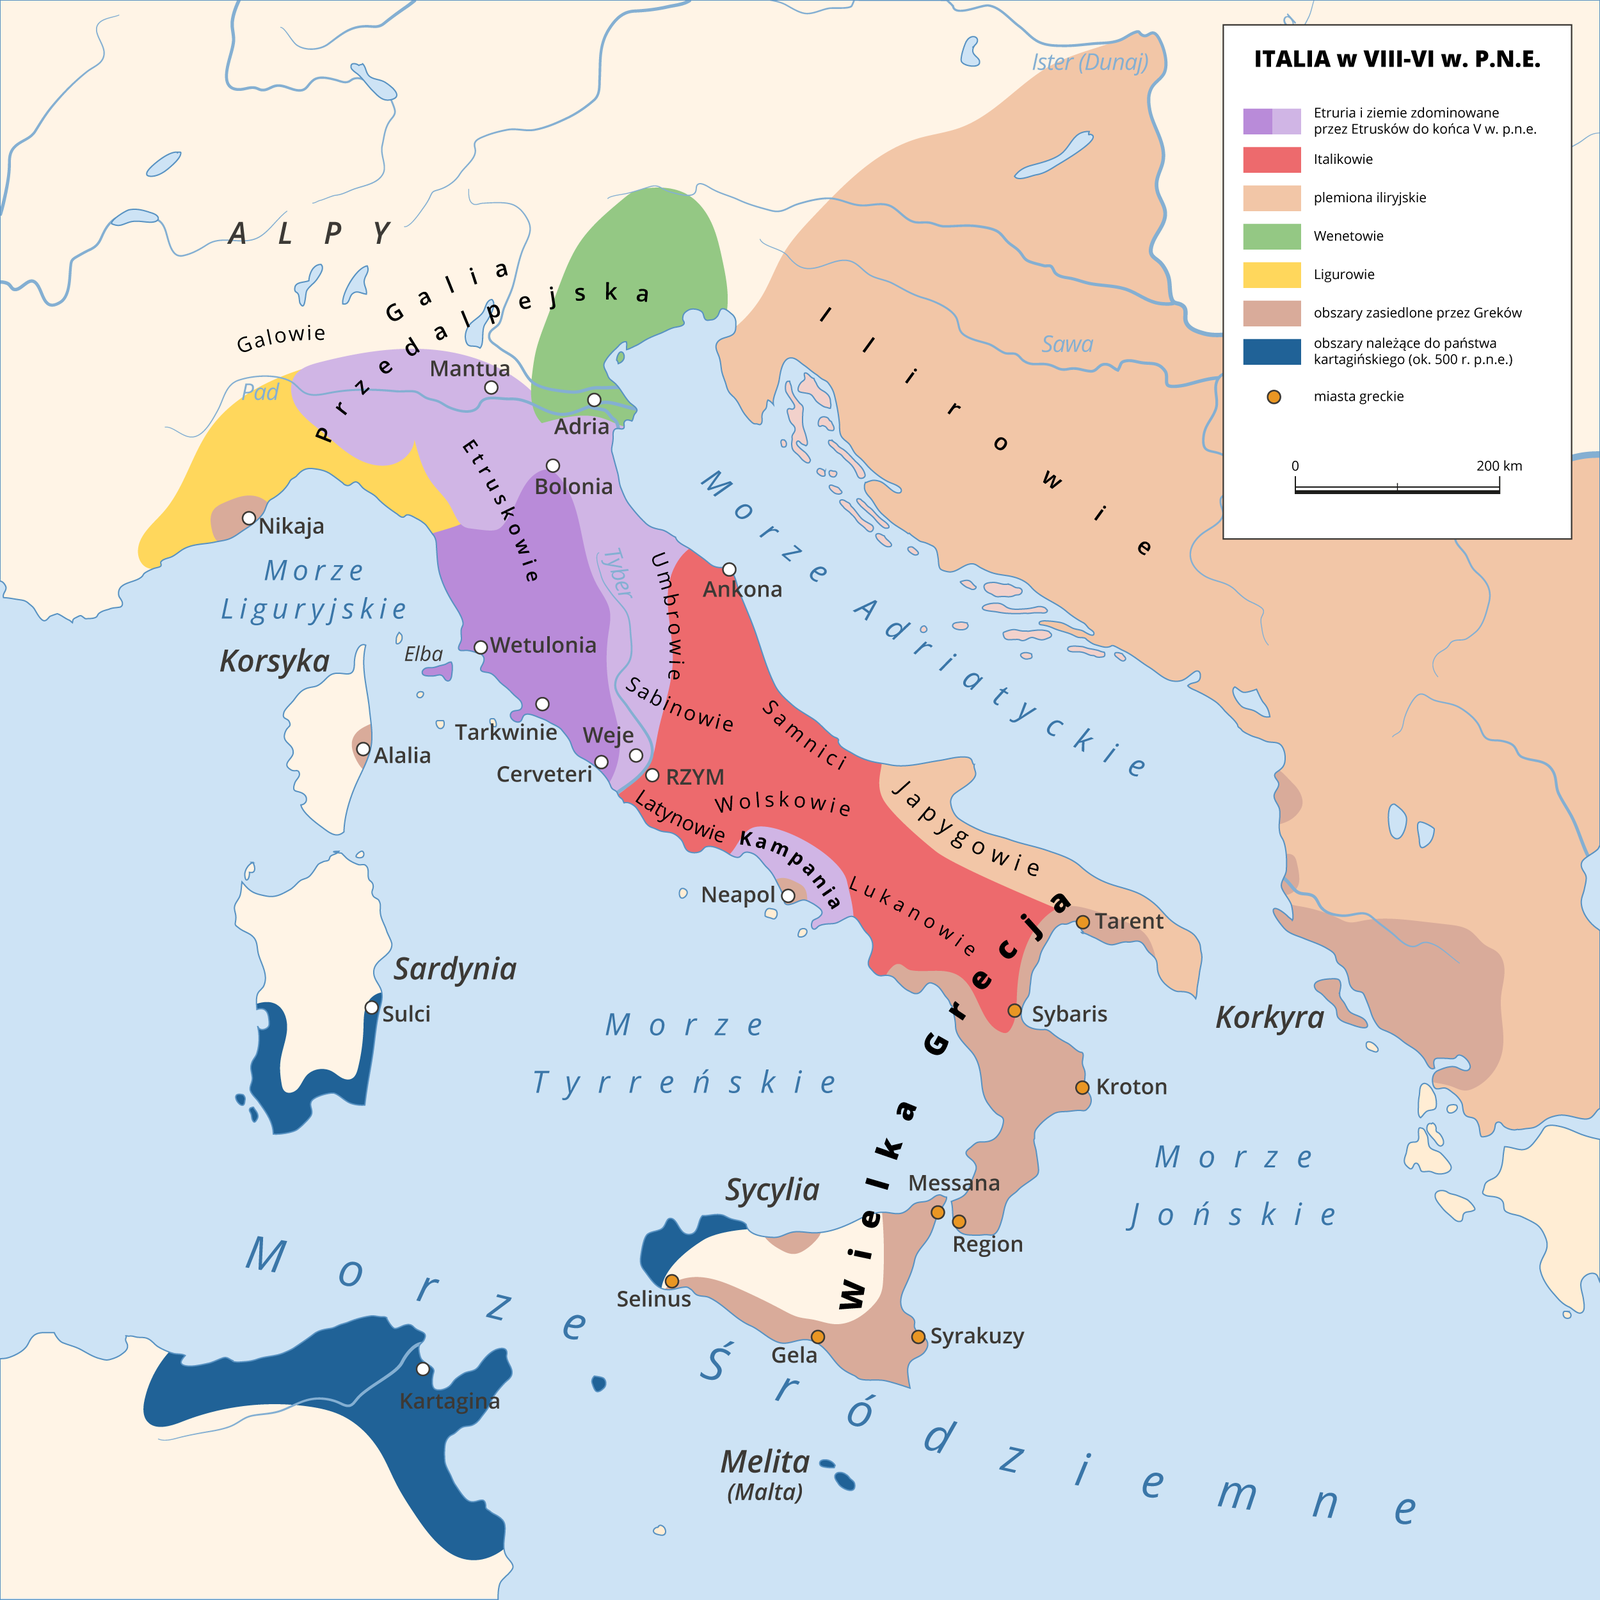 Mapa przedstawia Italię od 8 do 6 wieku przed naszą erą. Etruria to trójkątny obszar rozciągający się od miasta Bolonia na północny Półwyspu Apenińskiego do wschodniego wybrzeża Półwyspu Apenińskiego z miastami Wetulonia, Tarkwinia, Cerveteri oraz wyspą Elba. Ziemie zdominowane przez Etrusków do końca 5 wieku przed nasza erą powiększały ten trójkątny obszar, na północy docierając aż do Galii Przedalpejskiej (miasto Mantua), na wschodzie dochodząc do wybrzeża Morza Adriatyckiego, a na południu wyznaczając granicę w mieście Weje, tuż przy Rzymie. Do ziem zdominowanych przez Etrusków do końca 5 wieku przed nasza erą należał także niewielki obszar położony nad Morzem Tyrreńskim, wokół miasta Neapol (bez samego Neapolu).  Italikowie (Samnici, Latynowie, Wolskowie, Lukanowie, Sabinowie, Umbrowie) zajmowali obszar od środkowej do południowej części Półwyspu Apenińskiego z miastami: Ankona, Rzym.  Plemiona Iliryjskie zajmowały ziemie leżące na wschód od wybrzeża Morza Adriatyckiego oraz wąski pas ziemi na południowym wschodzie Półwyspu Apenińskiego. Wenetowie zajmowali teren północnego Wybrzeża Morza Adriatyckiego, Ligurowie natomiast północne wybrzeże Morza Liguryjskiego bez nadmorskiego miasta Nikaja. Obszary zasiedlone przez Greków to okolice miasta Nikaja (na północnym wybrzeżu Morza Liguryjskiego), miasto Alalia na Korsyce, miasto Neapol na północnym wybrzeżu Morza Tyrreńskiego, południowy zachód Półwyspu Apenińskiego (z miastami Tarent, Sybaris, Kroton, Region), północne, wschodnie i południowe wybrzeże Sycylii (miasta Messana, Syrakuzy, Gela, Selinius) oraz fragment ziem na północnym wybrzeżu Morza Jońskiego wraz z wyspą Karkyrą. Obszary należące do państwa kartagińskiego (ok. 500 roku przed naszą erą), to południowe wybrzeże Sardynii, wschodnie wybrzeże Sycylii, oraz północno‑wschodnie wybrzeże Afryki z miastem Kartagina i wyspa Malta. 